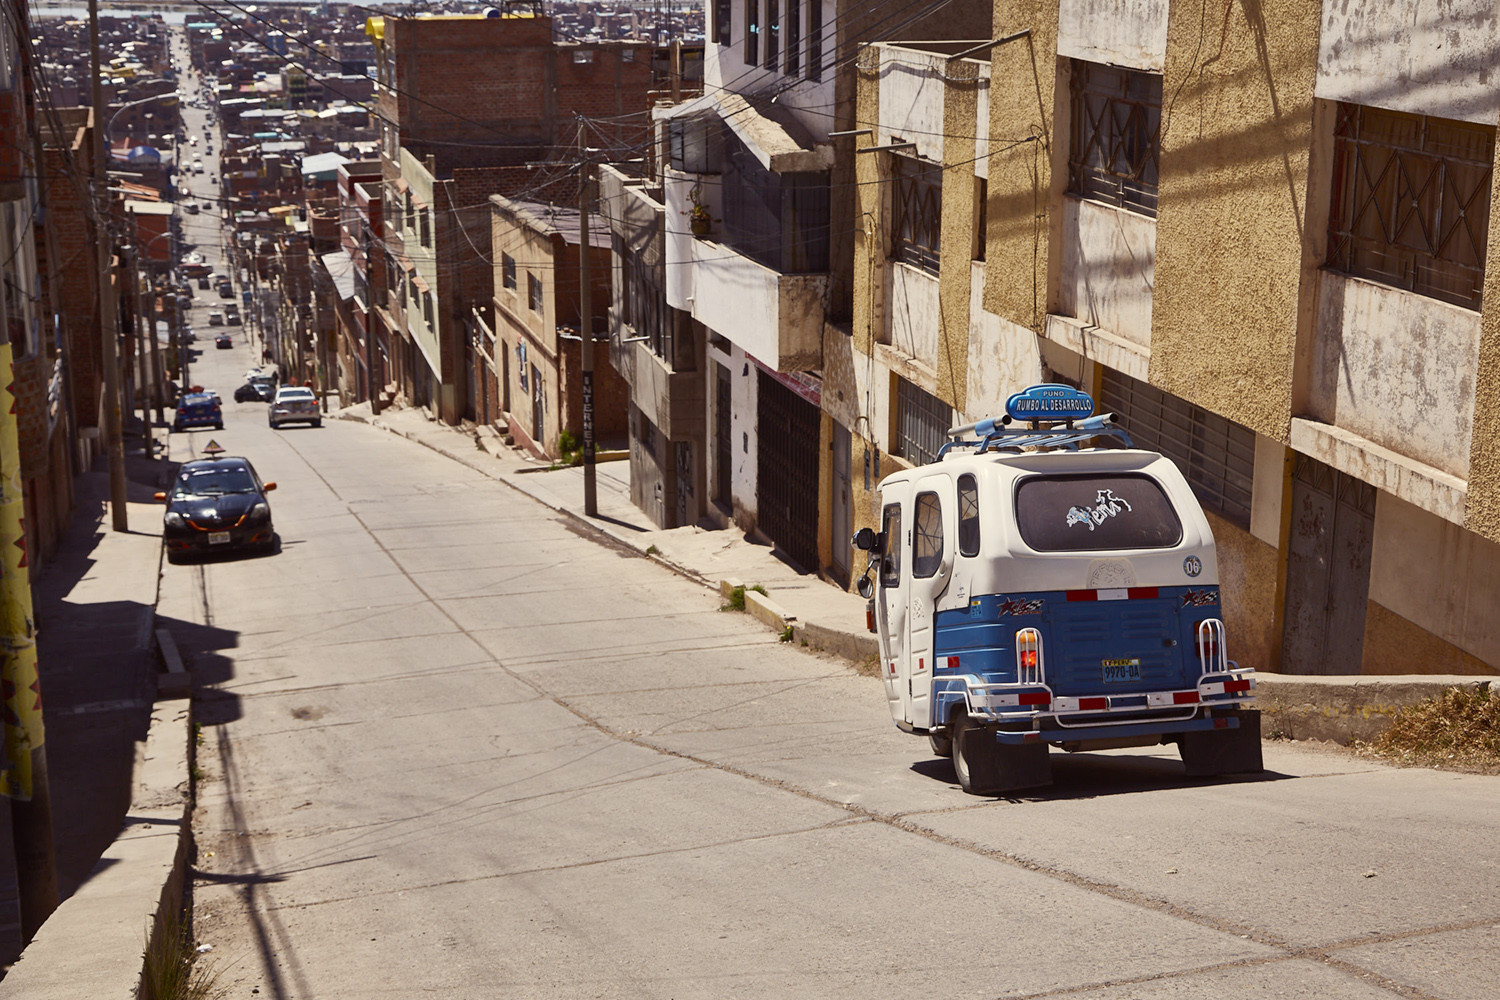 Strasse in Puno mit Mototaxi, steile Strasse, Straßenverhältnisse in Peru, Autofahren in Peru, Selbst fahren in Peru